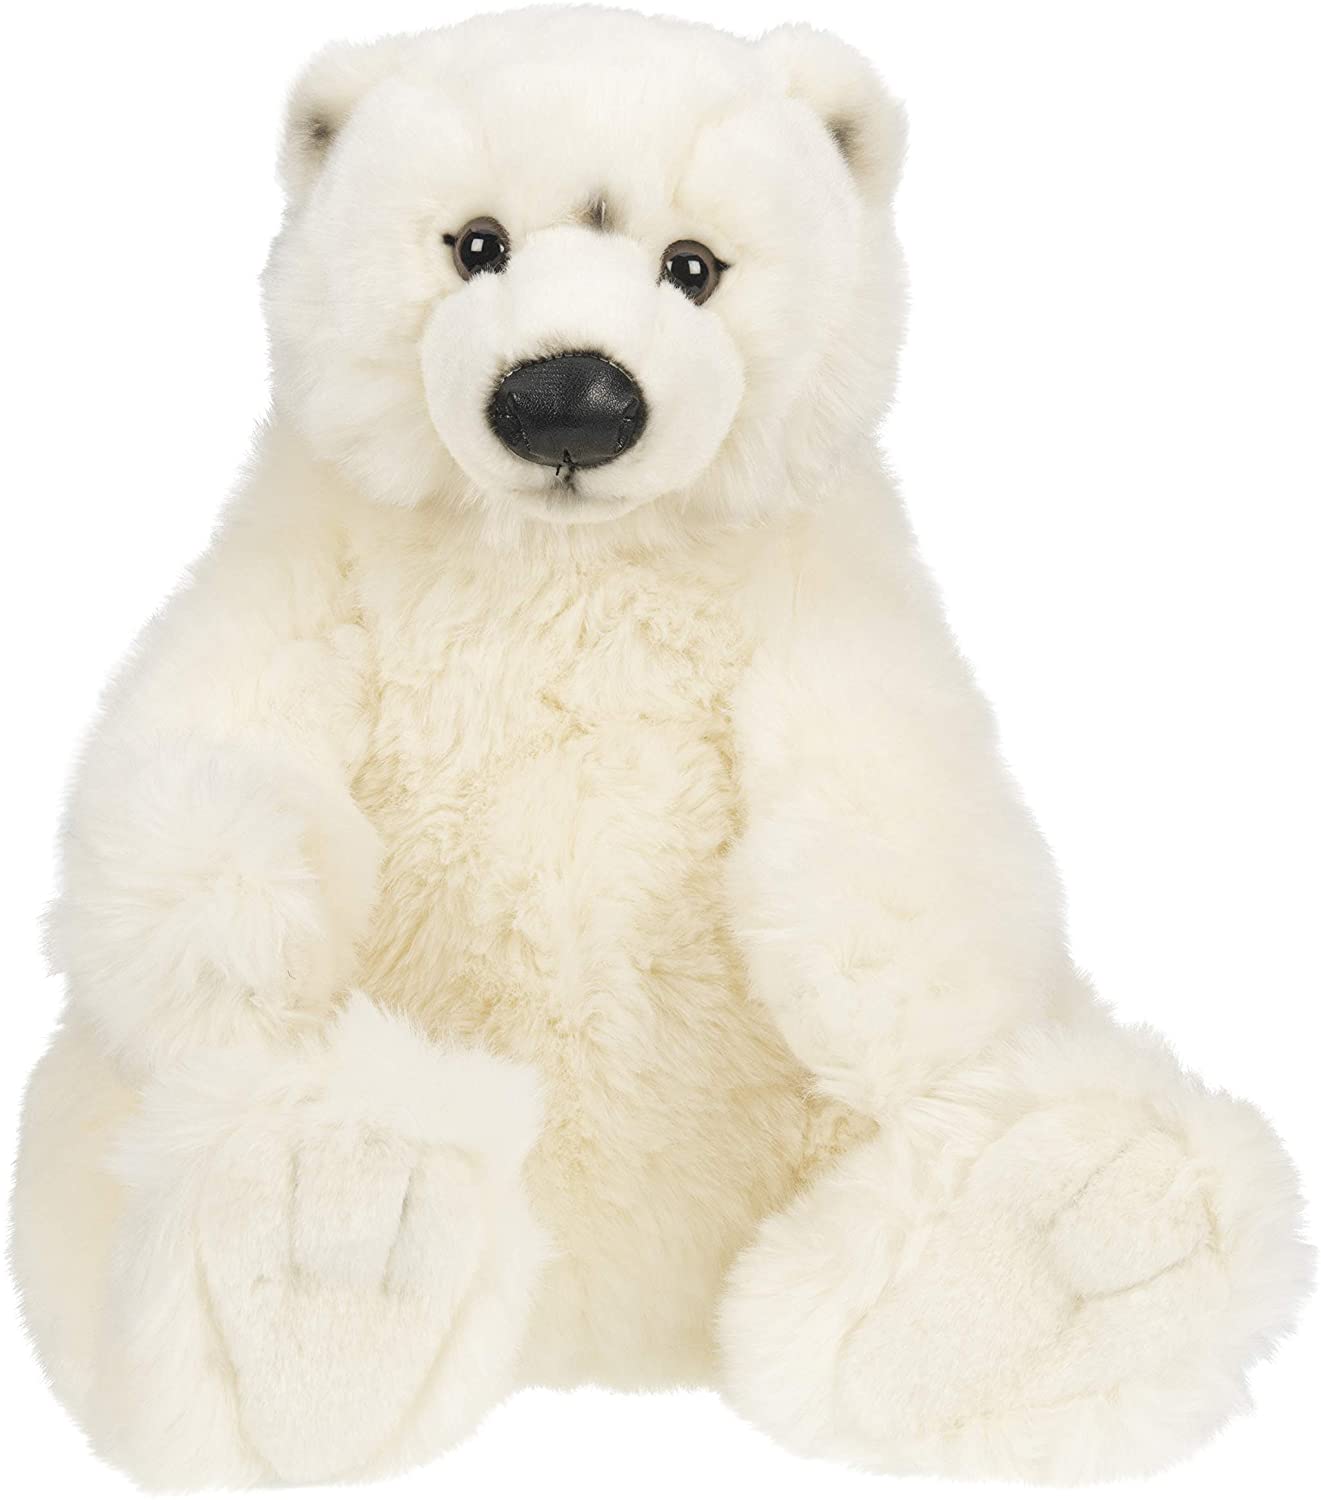 Uni-Toys - Eisbär, sitzend - 33 cm (Höhe) - Bär, Wildtier - Plüschtier, Kuscheltier